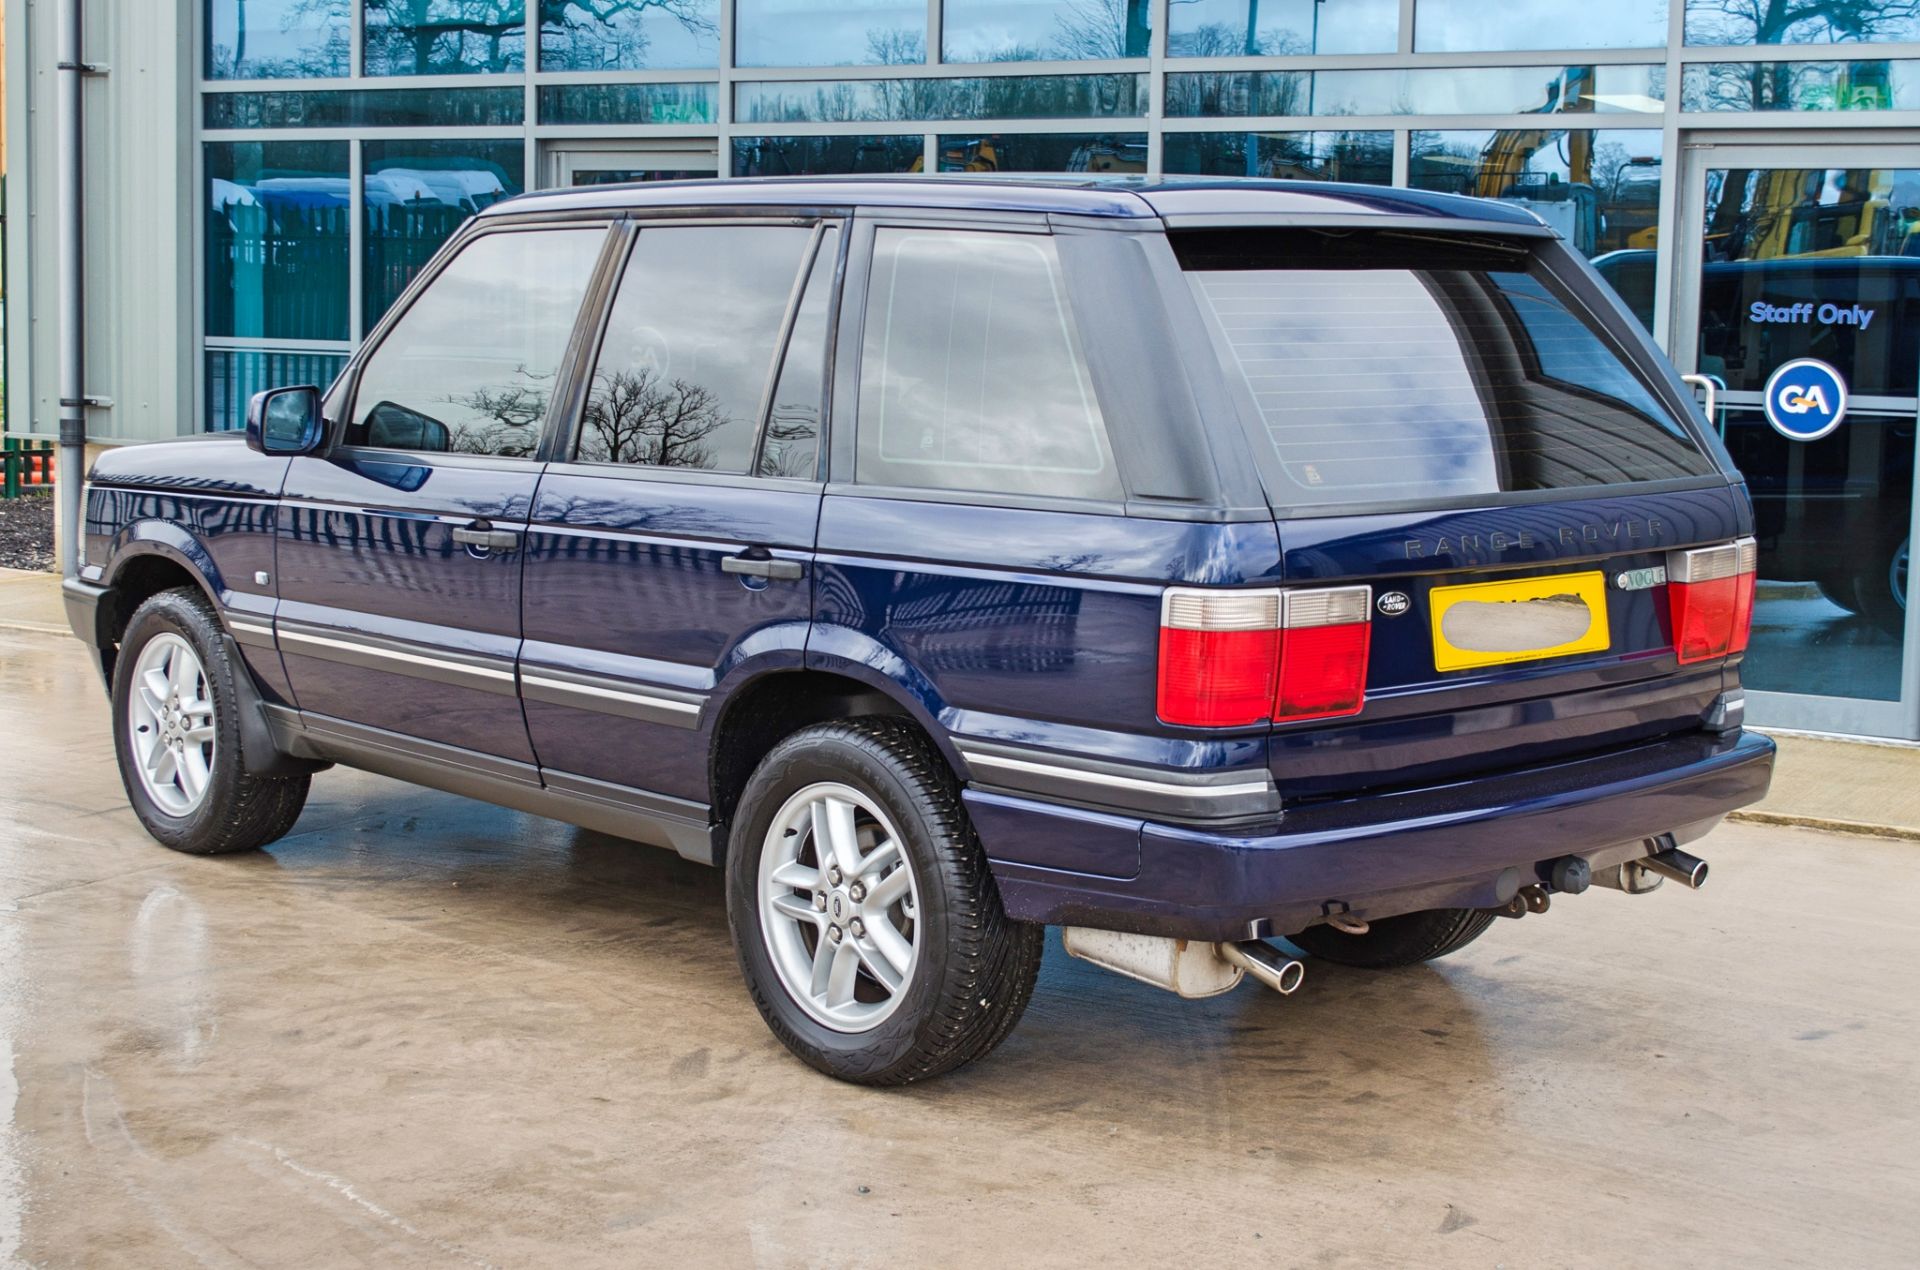 2001 Range Rover Vogue 4.6 litre V8 Auto 4 door SUV estate Registration: Y498 HNP Chassis: - Image 8 of 65